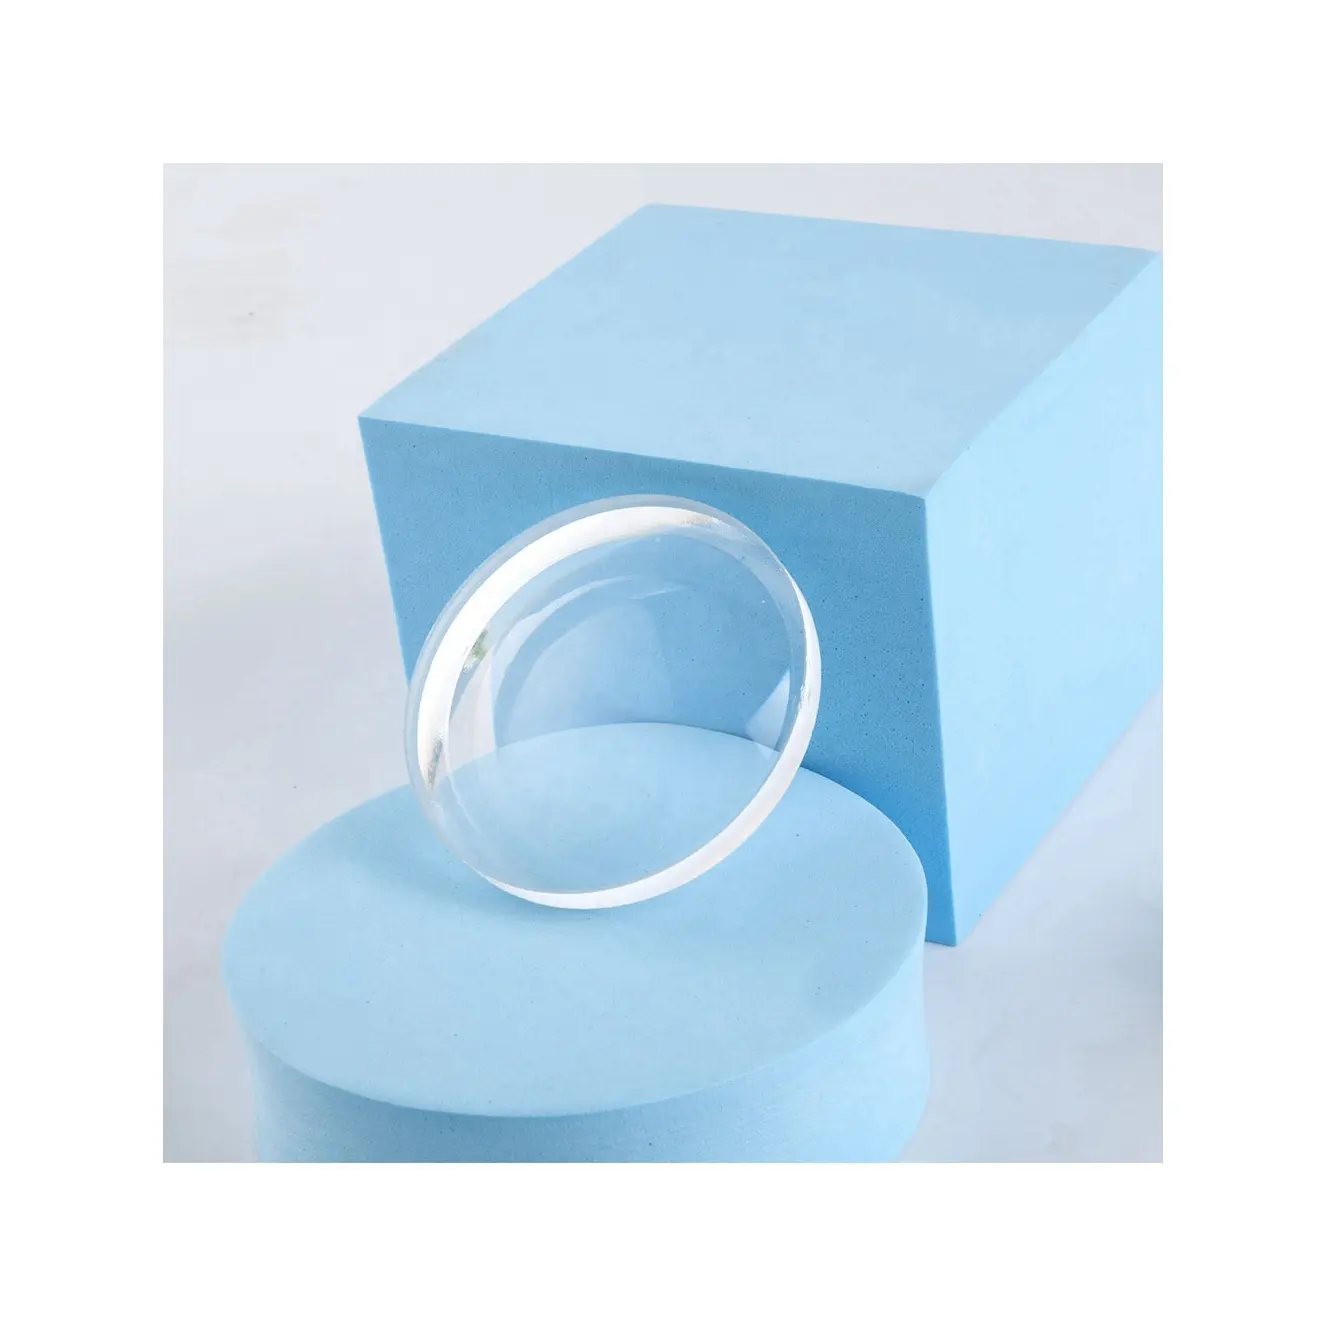 Lenti minerali UC/HMC in vetro semifinito bianco ottico intraoculare 1.523